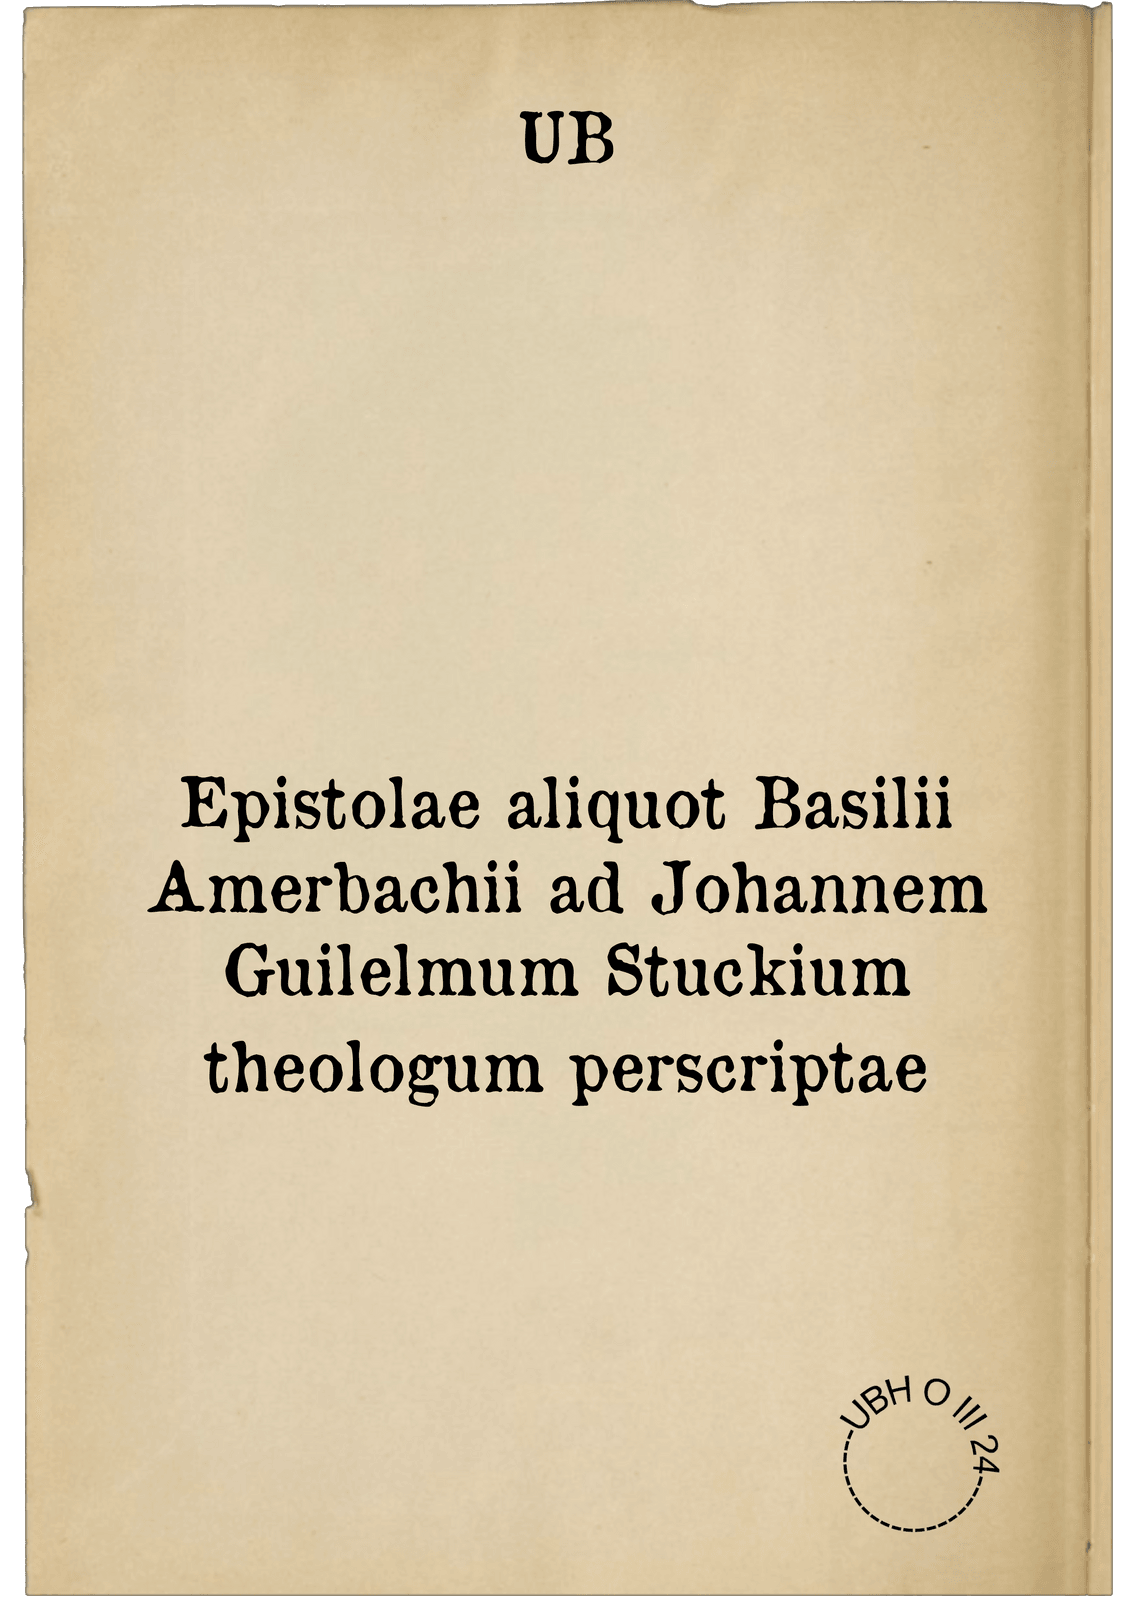 Epistolae aliquot Basilii Amerbachii ad Johannem Guilelmum Stuckium theologum perscriptae